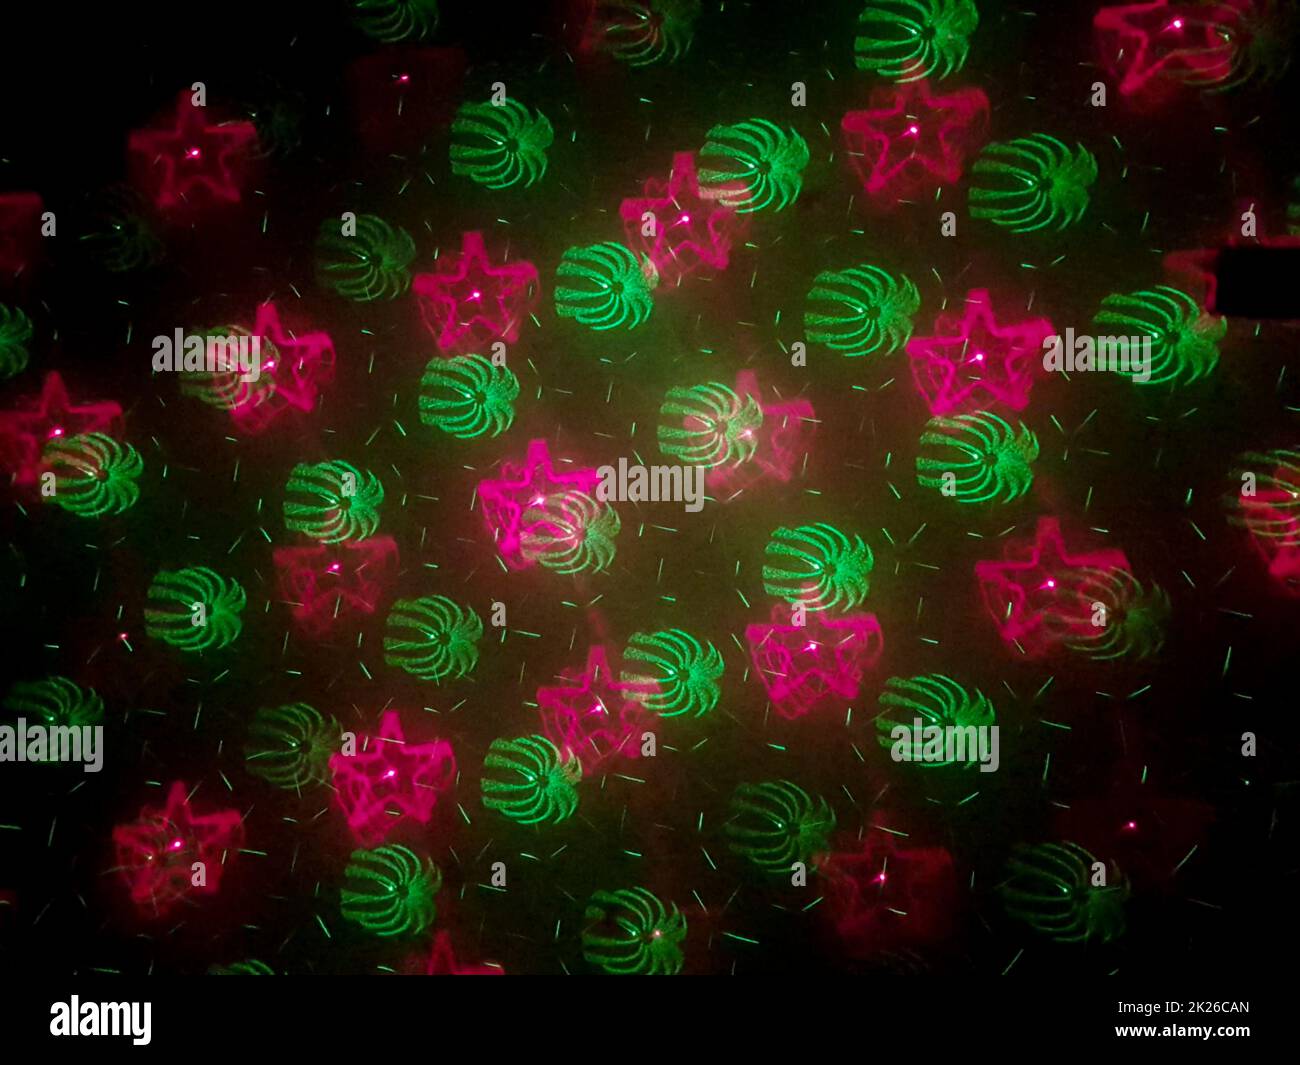 Wunderschöne Aufnahme von Laserlichtern mit Stern- und Feuerwerkskörpern an der Wand Stockfoto